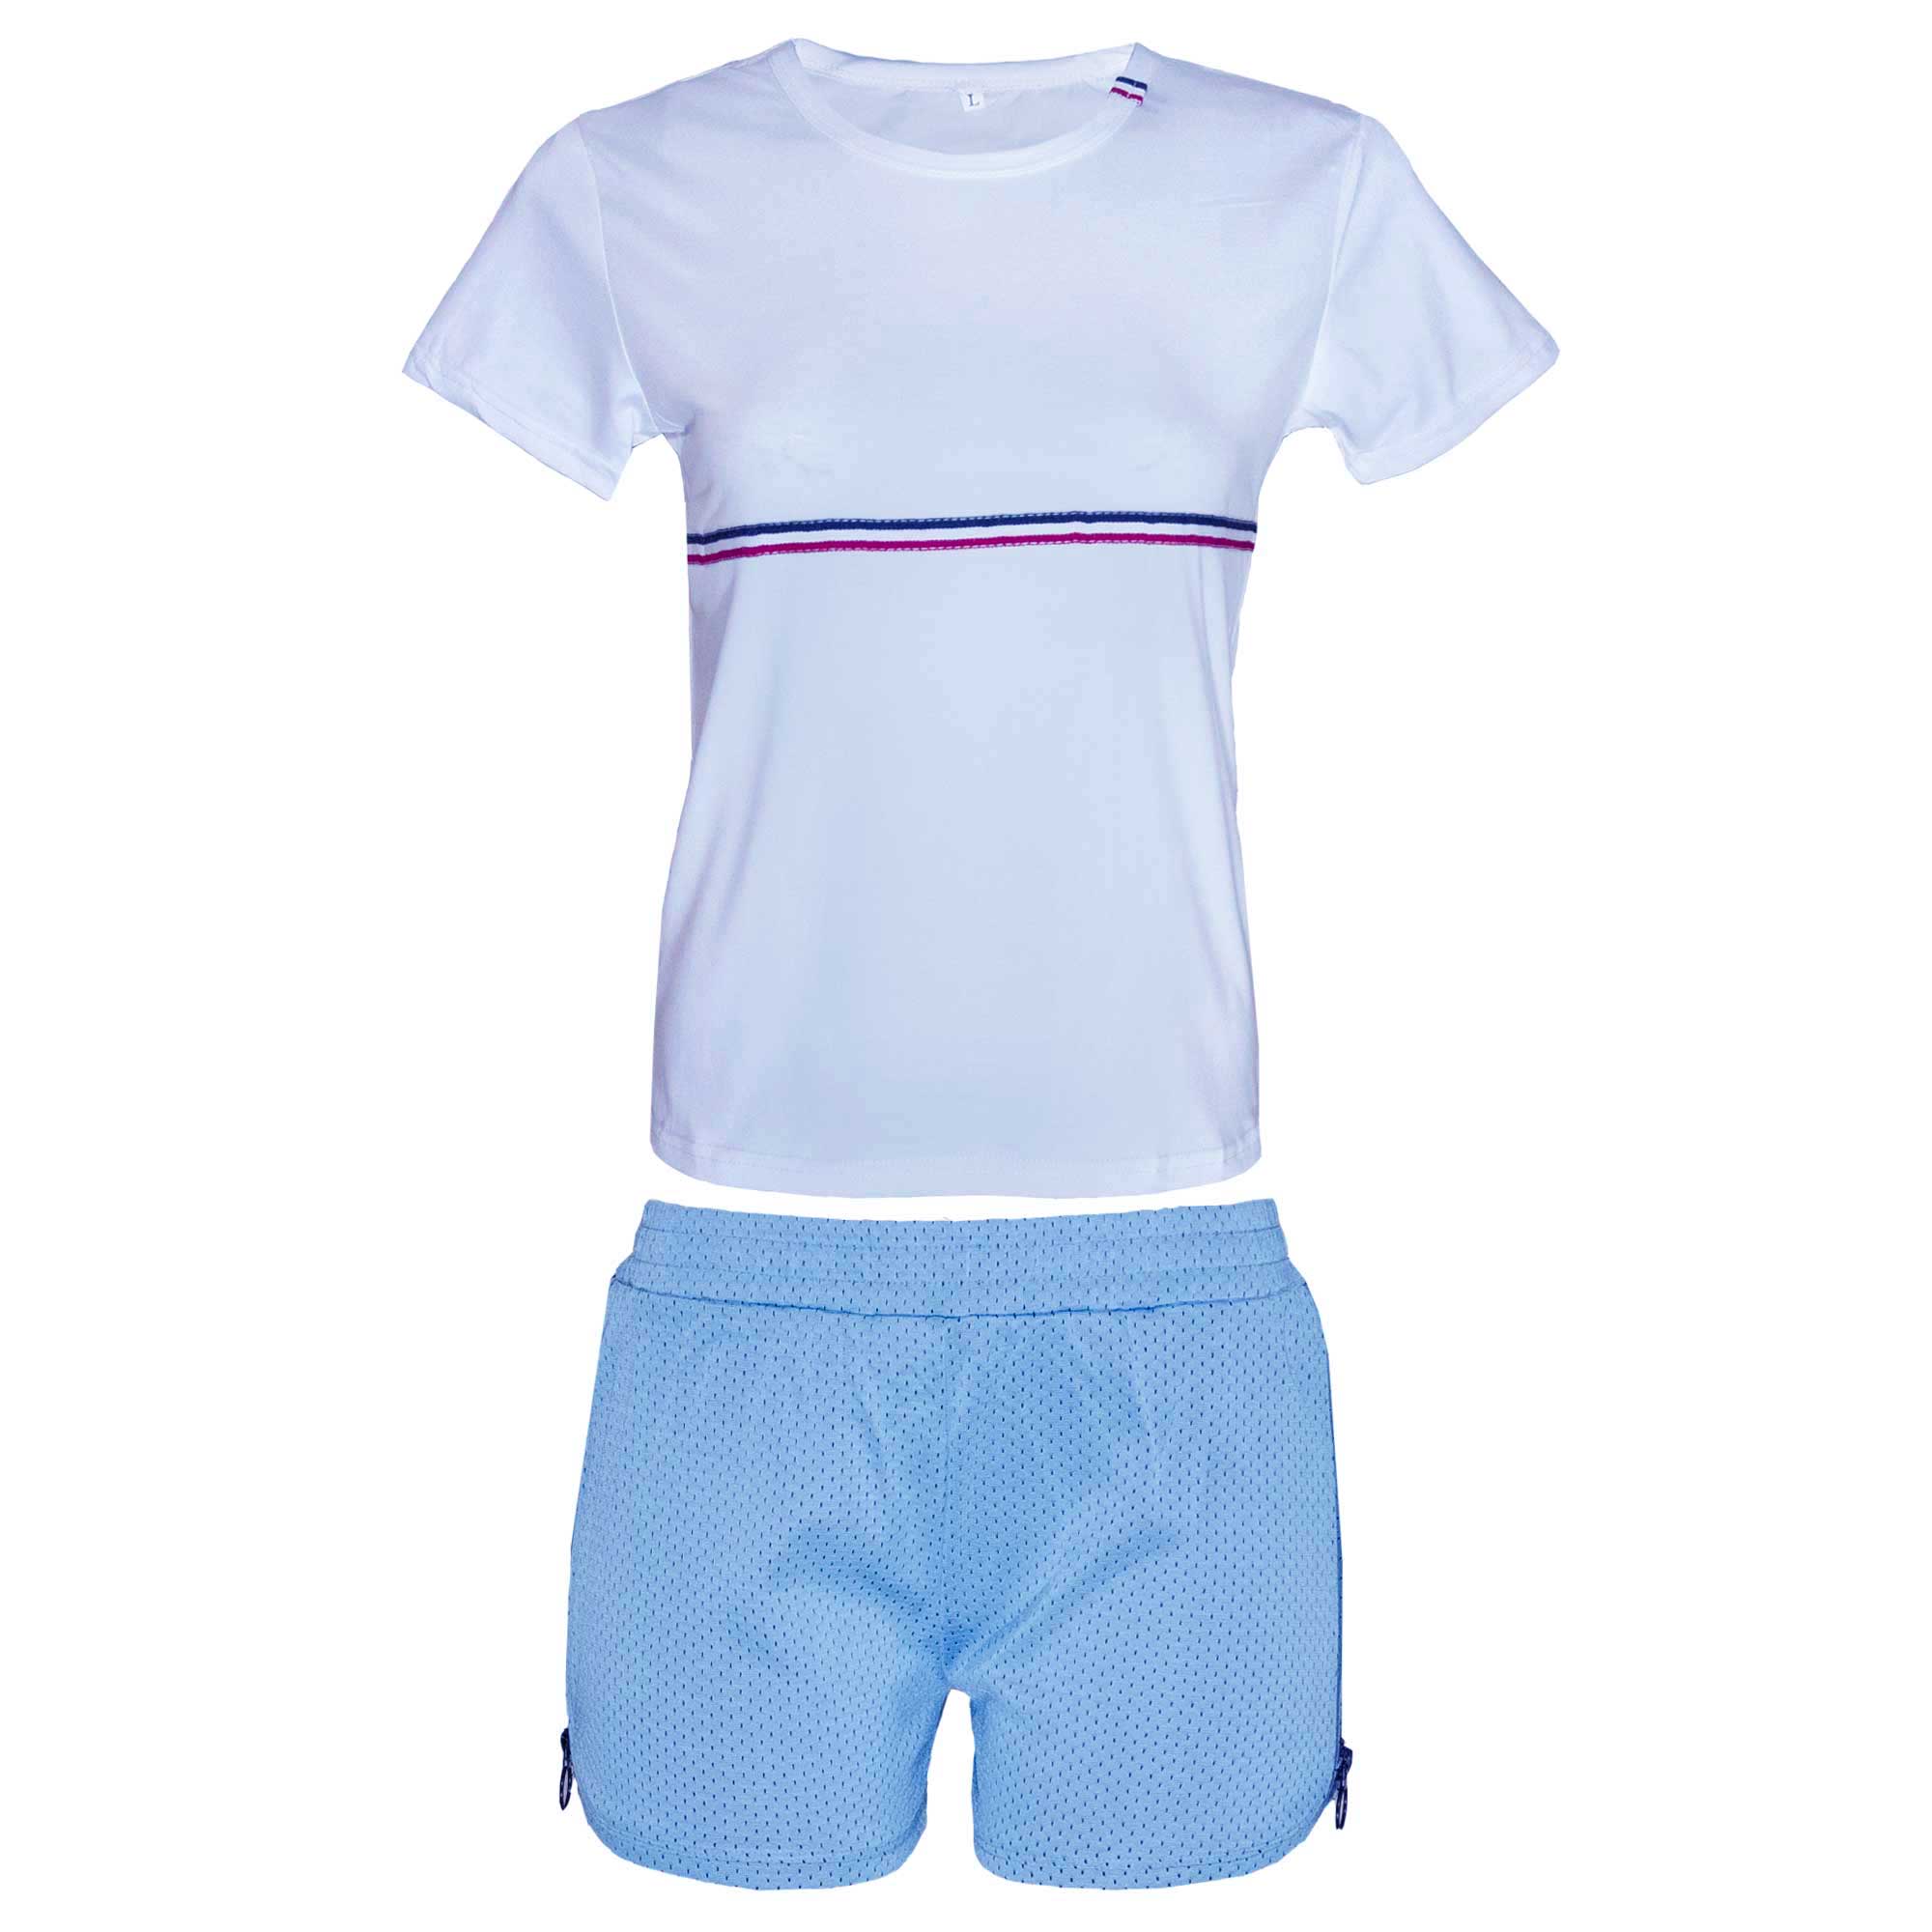 ست تی شرت و شلوارک ورزشی زنانه کد 24-1148